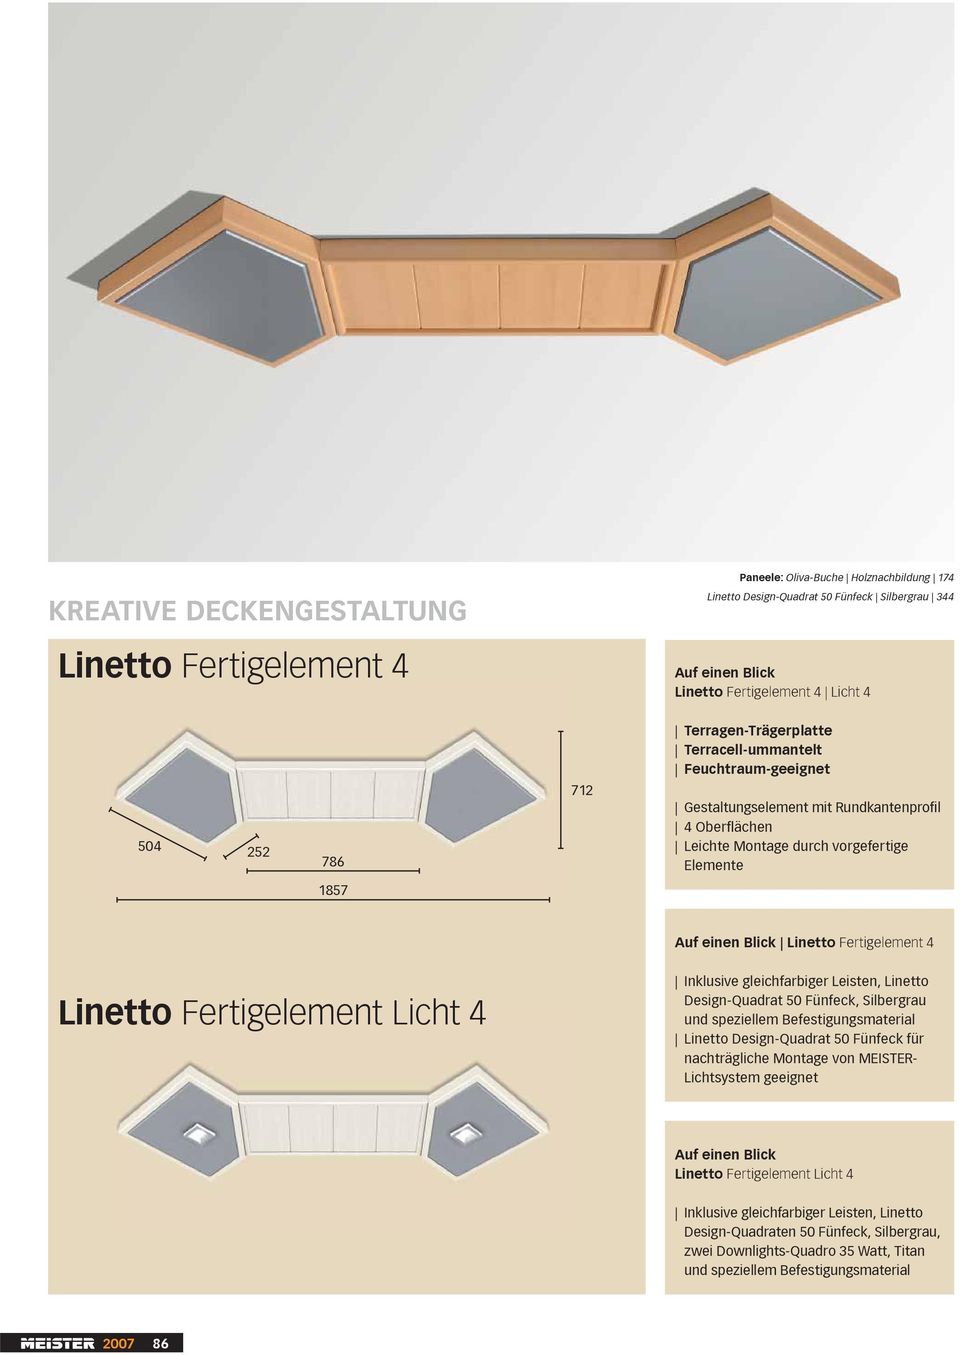 Inklusive gleichfarbiger Leisten, Linetto Design-Quadrat 50 Fünfeck, Silbergrau und speziellem Befestigungsmaterial Linetto Design-Quadrat 50 Fünfeck für nachträgliche Montage von MEISTER-